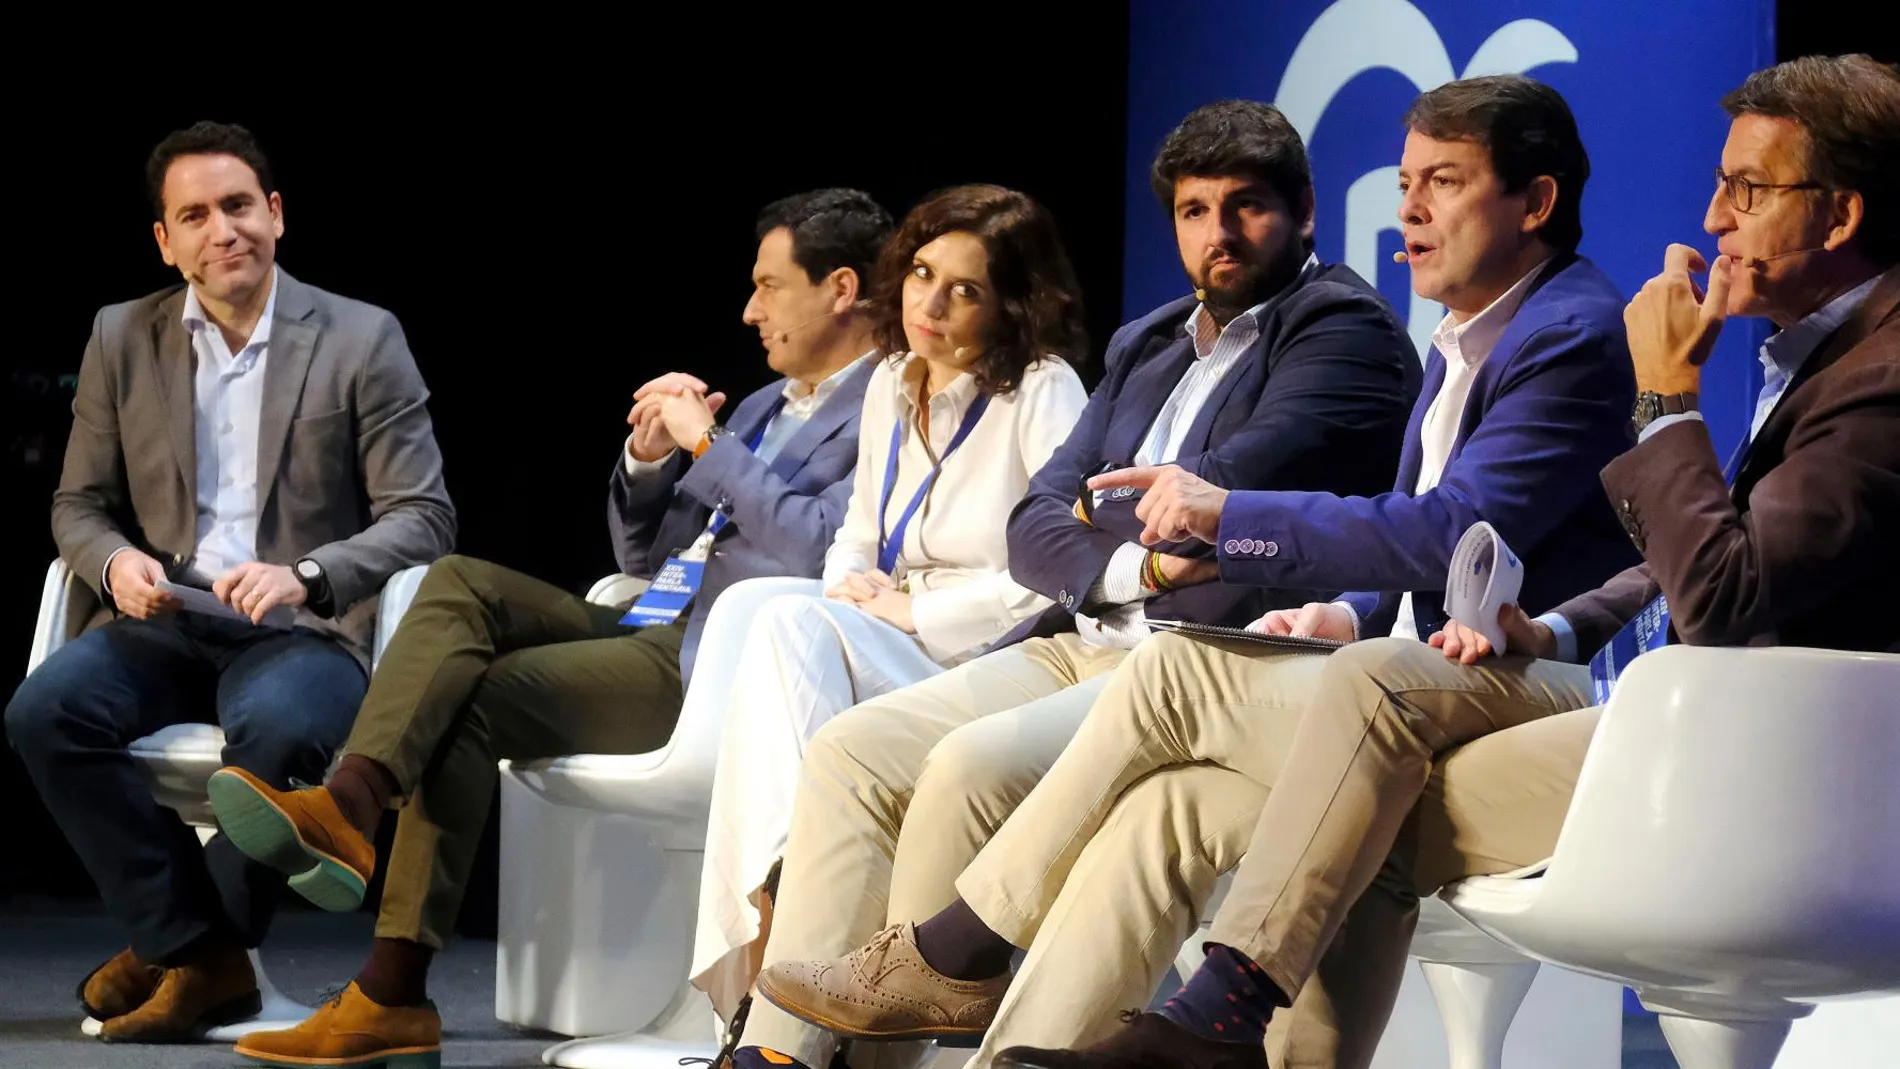 Fernández Mañueco interviene en la mesa redonda moderada por Egea, en la que participaron Feijoó, Moreno, Ayuso y López Miras, en Alicante